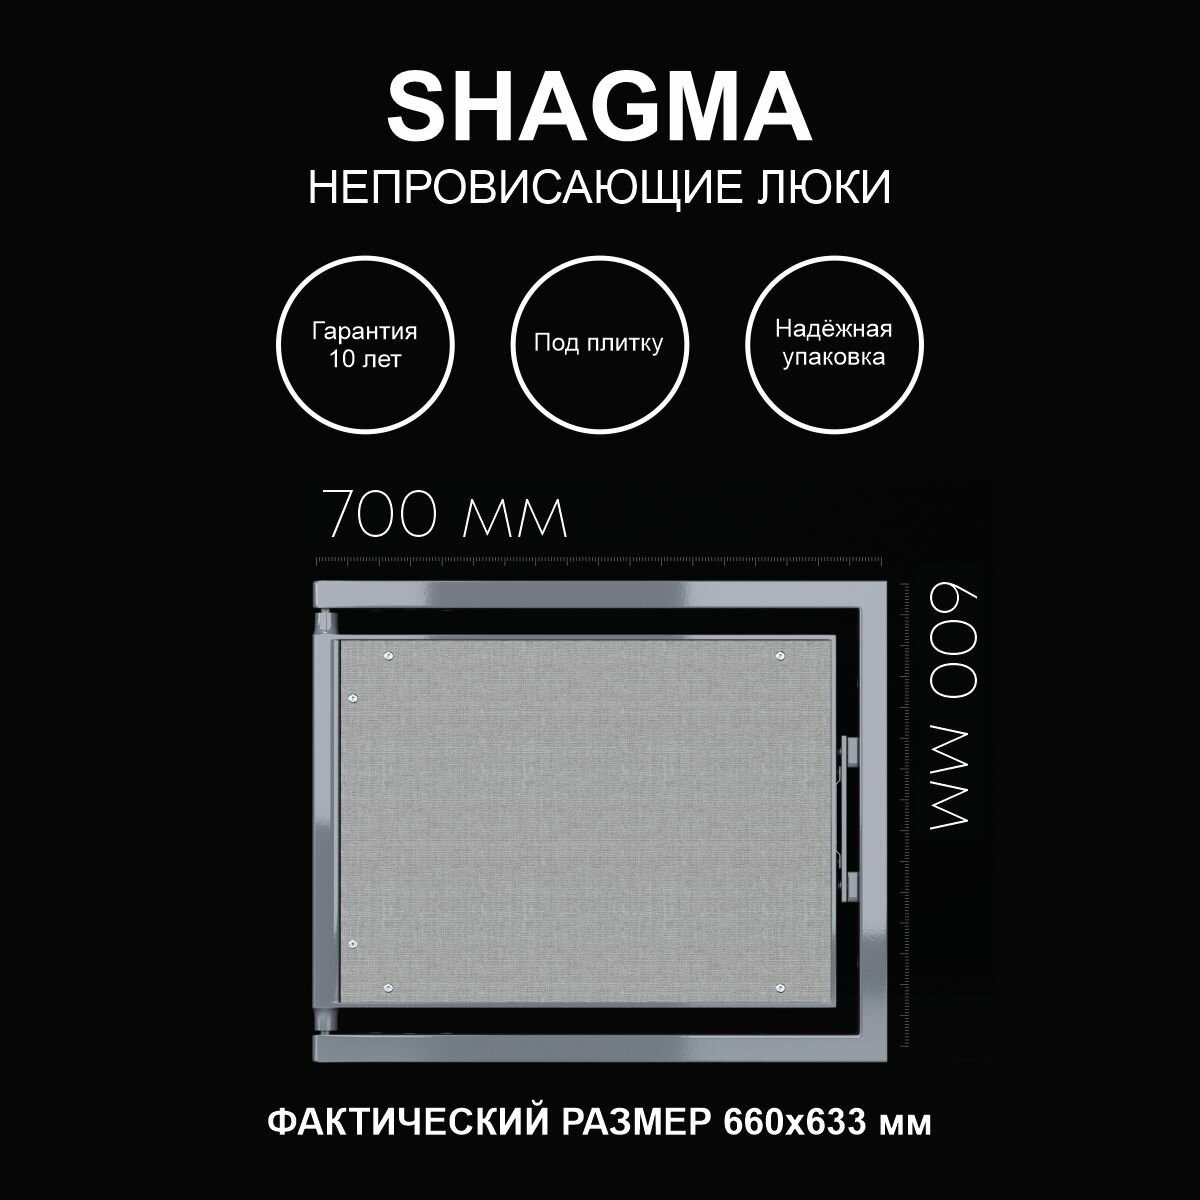 Люк ревизионный под плитку 700х600 мм одностворчатый сантехнический настенный фактический размер 660(ширина) х 633(высота) мм SHAGMA